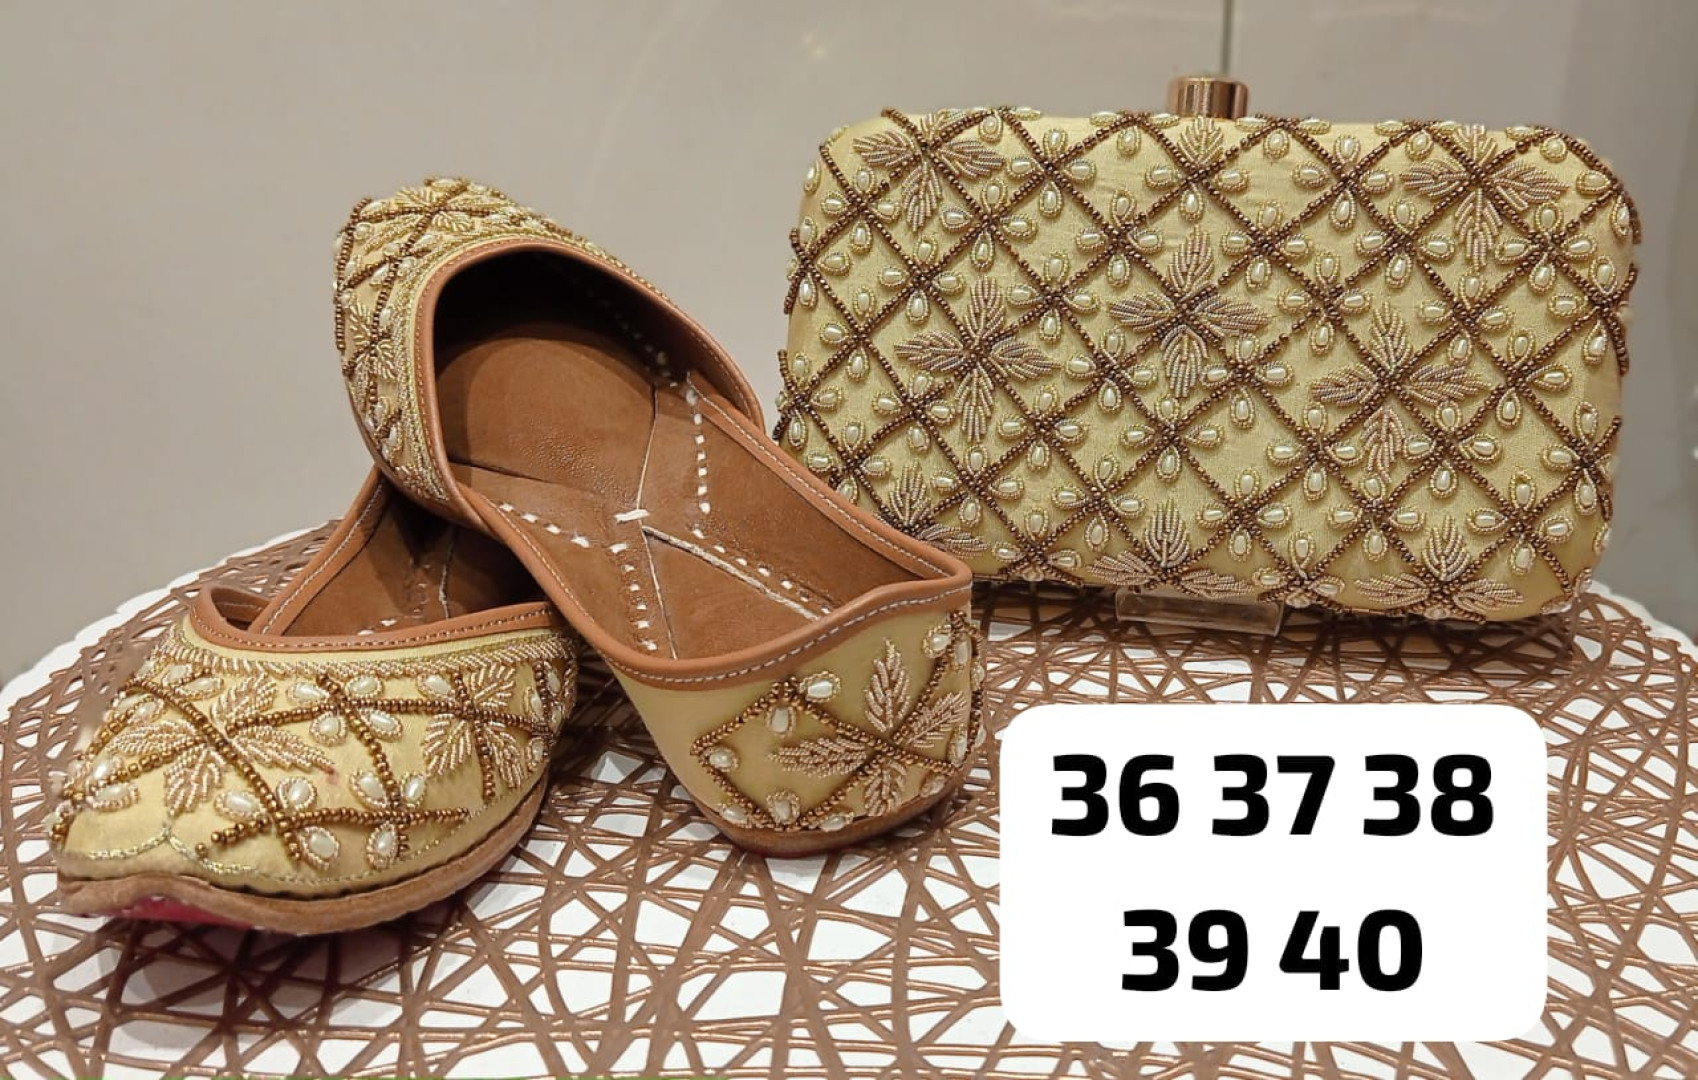 Clutch handbag and Jutti Sandals for women